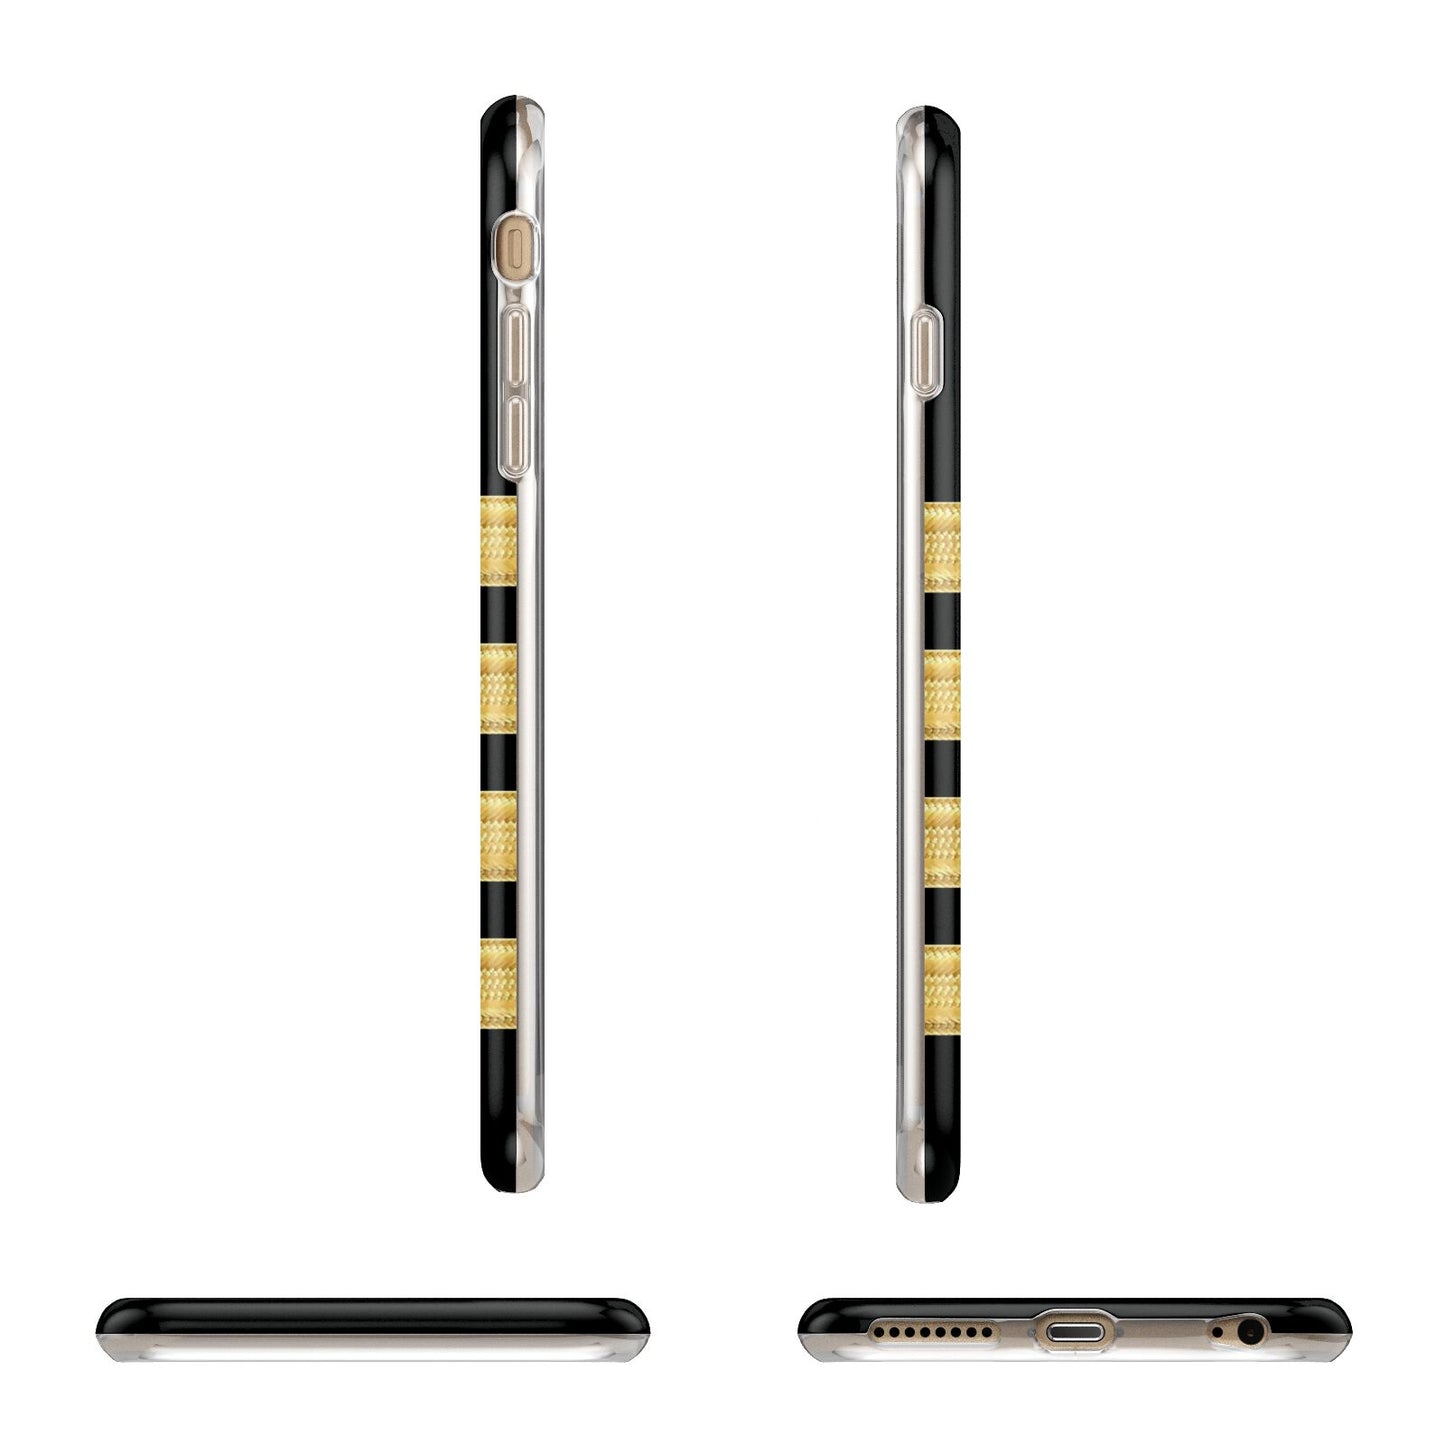 Black Gold Pilot Stripes Apple iPhone 6 Plus 3D Wrap Tough Case Alternative Image Angles